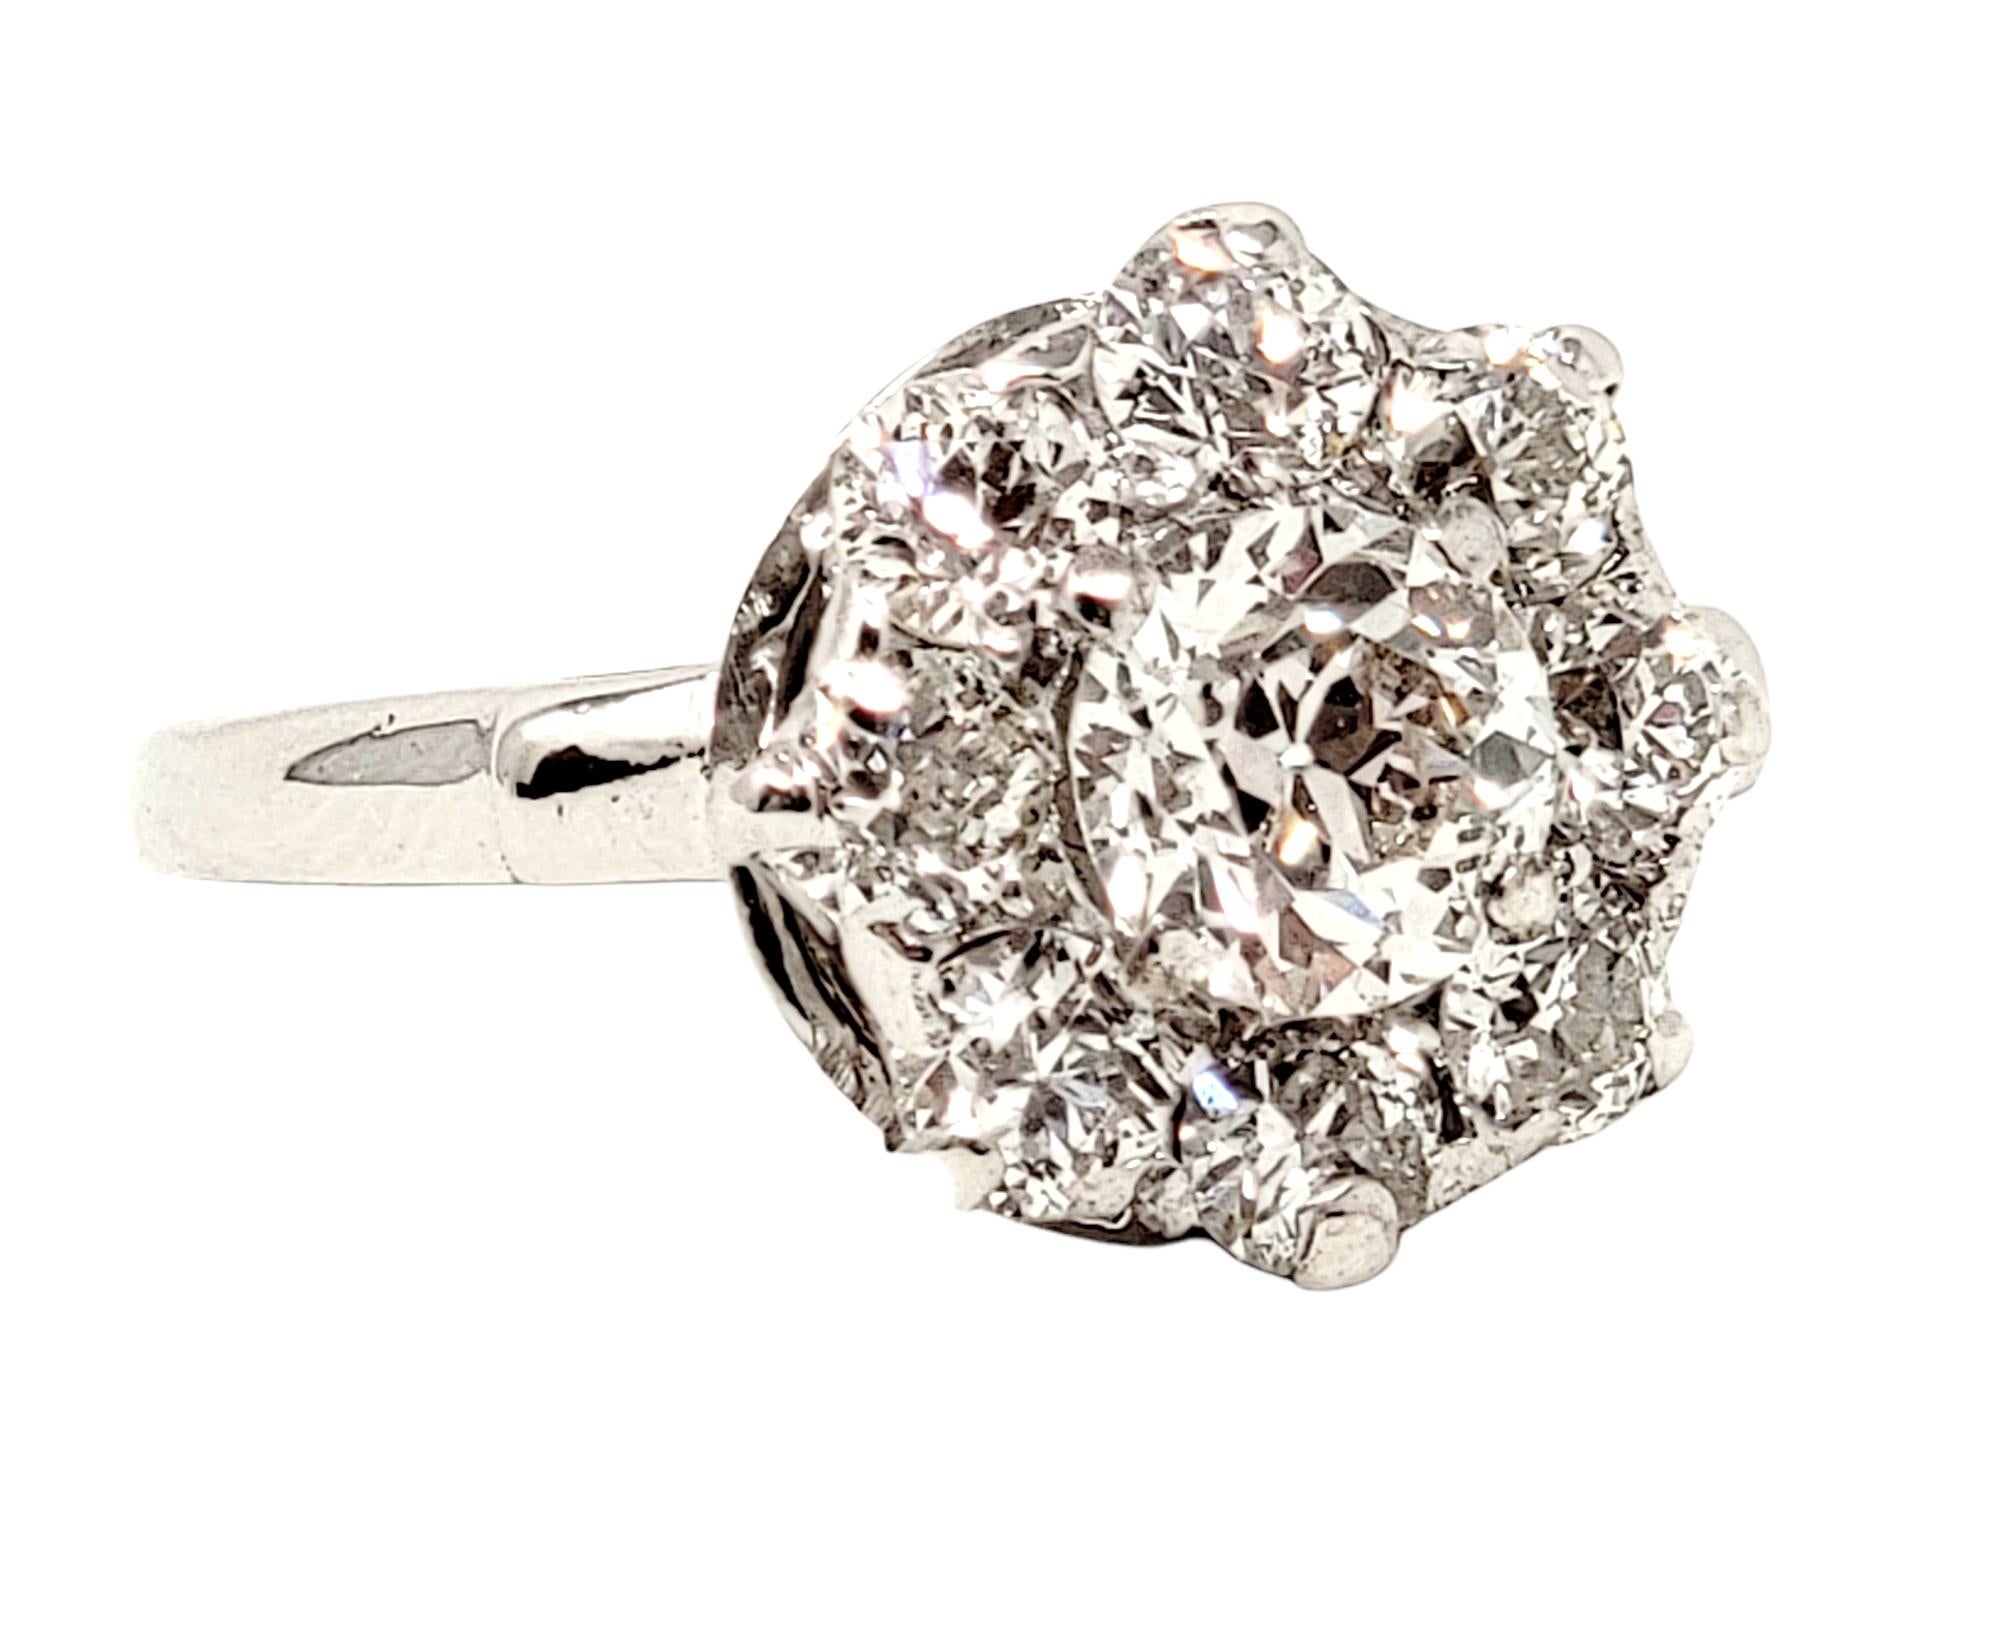 Taille de l'anneau : 6

Superbe bague de fiançailles en diamant de taille européenne ancienne. Cette pièce brillante remplit le doigt d'étincelles tout en restant délicate. La pierre centrale ronde est sertie au centre de la pièce et se trouve